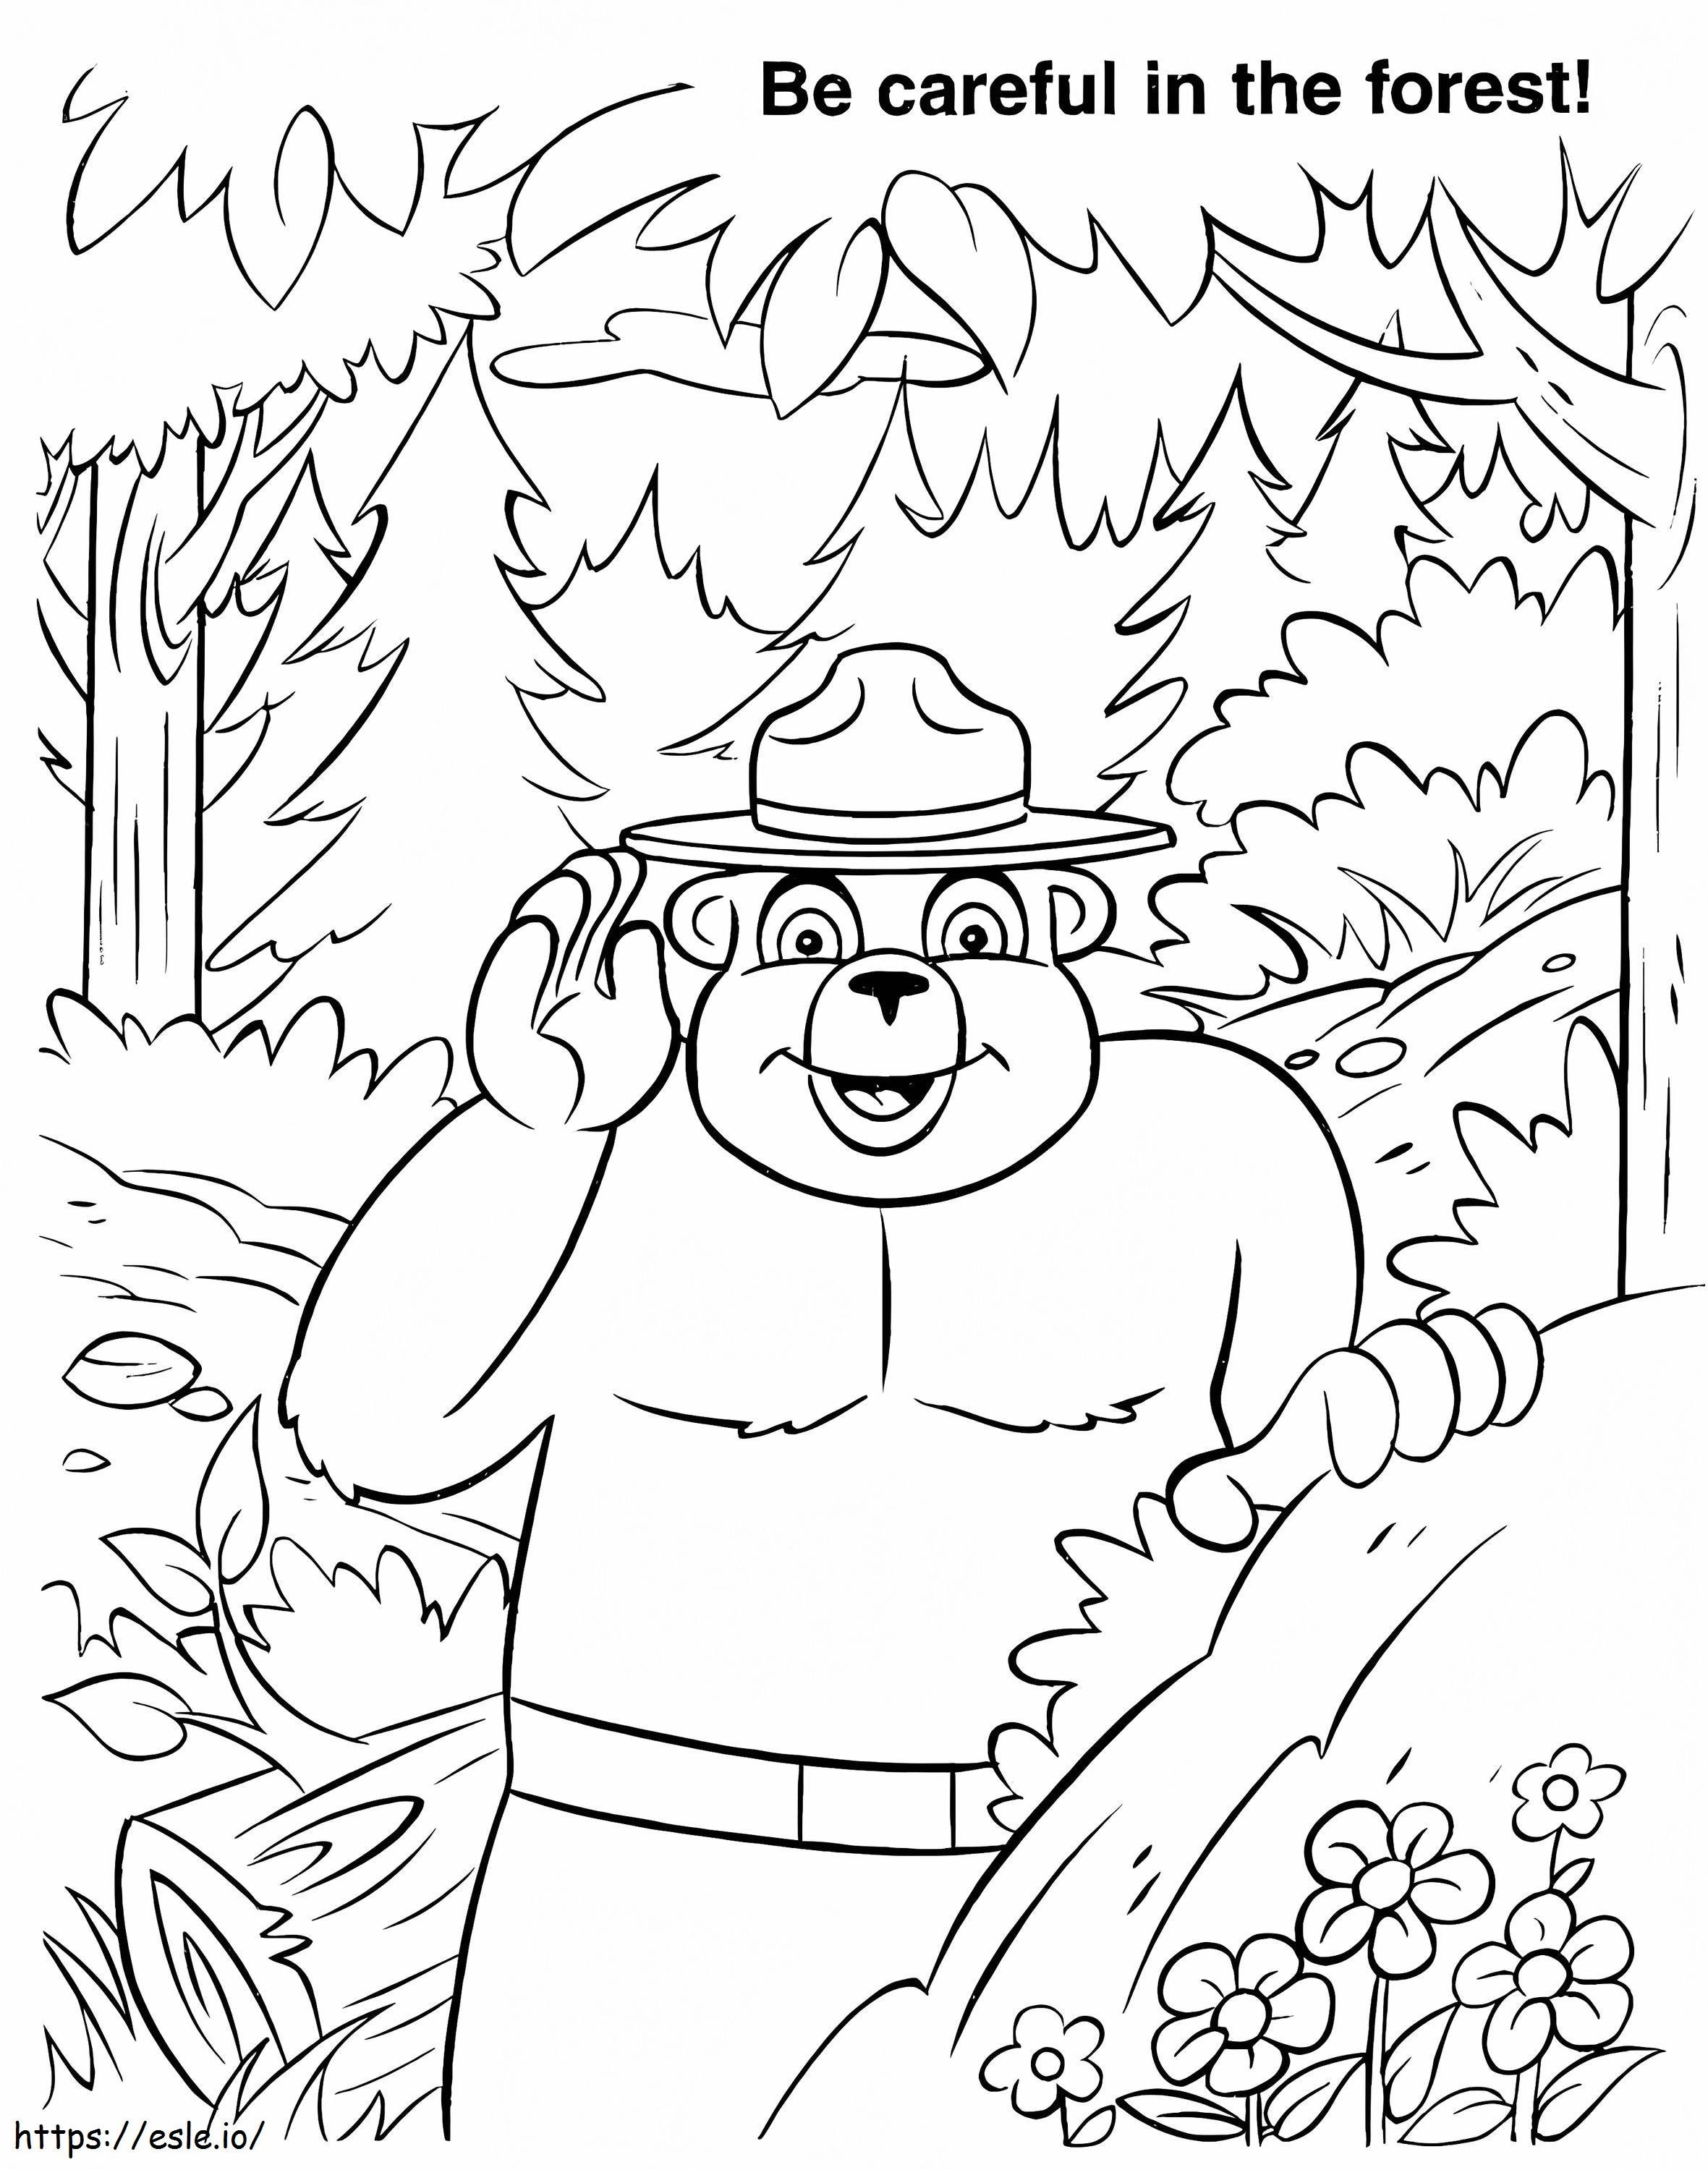 Smokey Niedźwiedź W Lesie kolorowanka